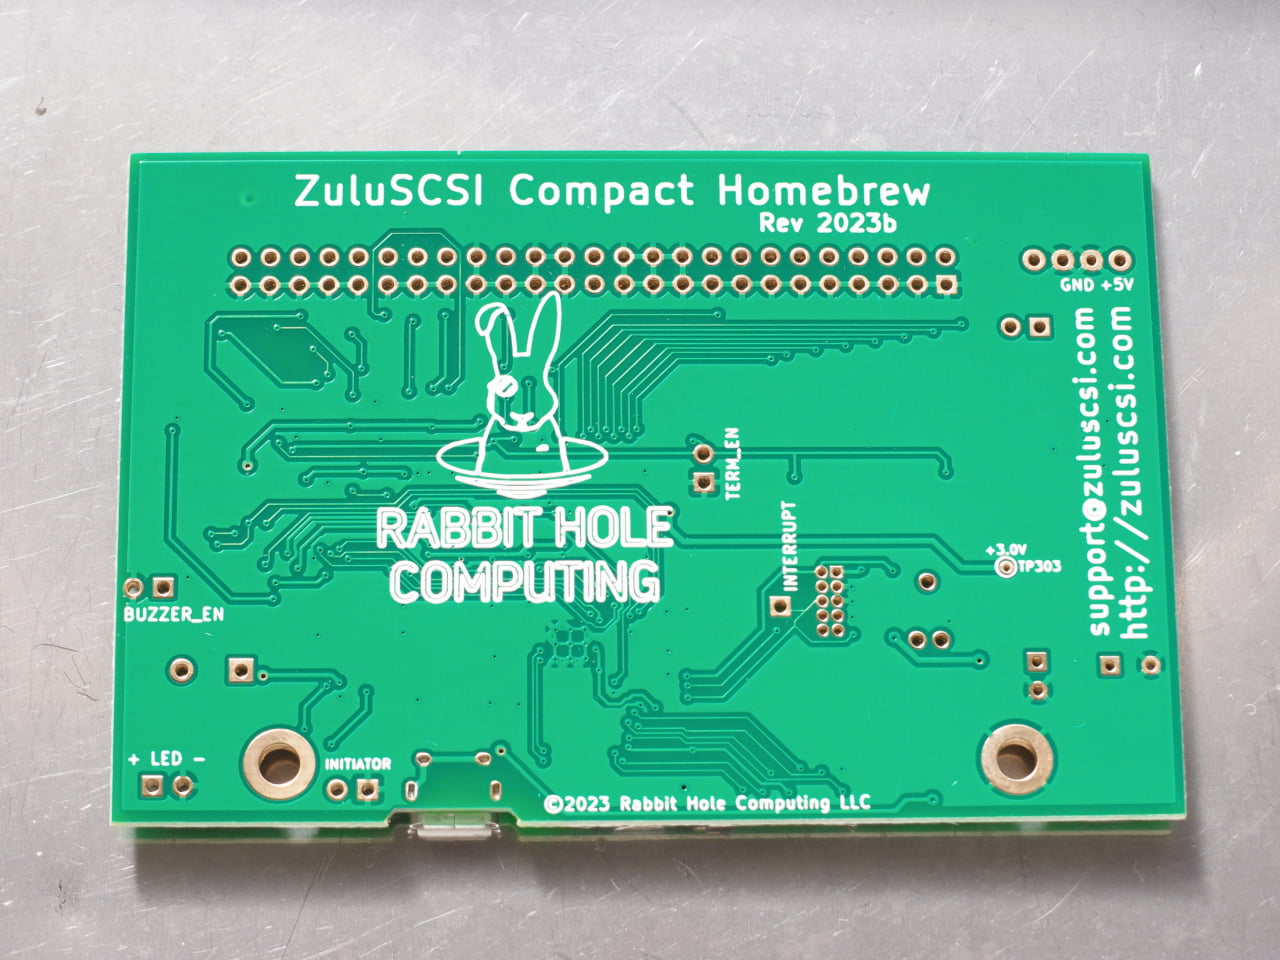 ZuluSCSI RP2040 Compact Homebrew基板裏側